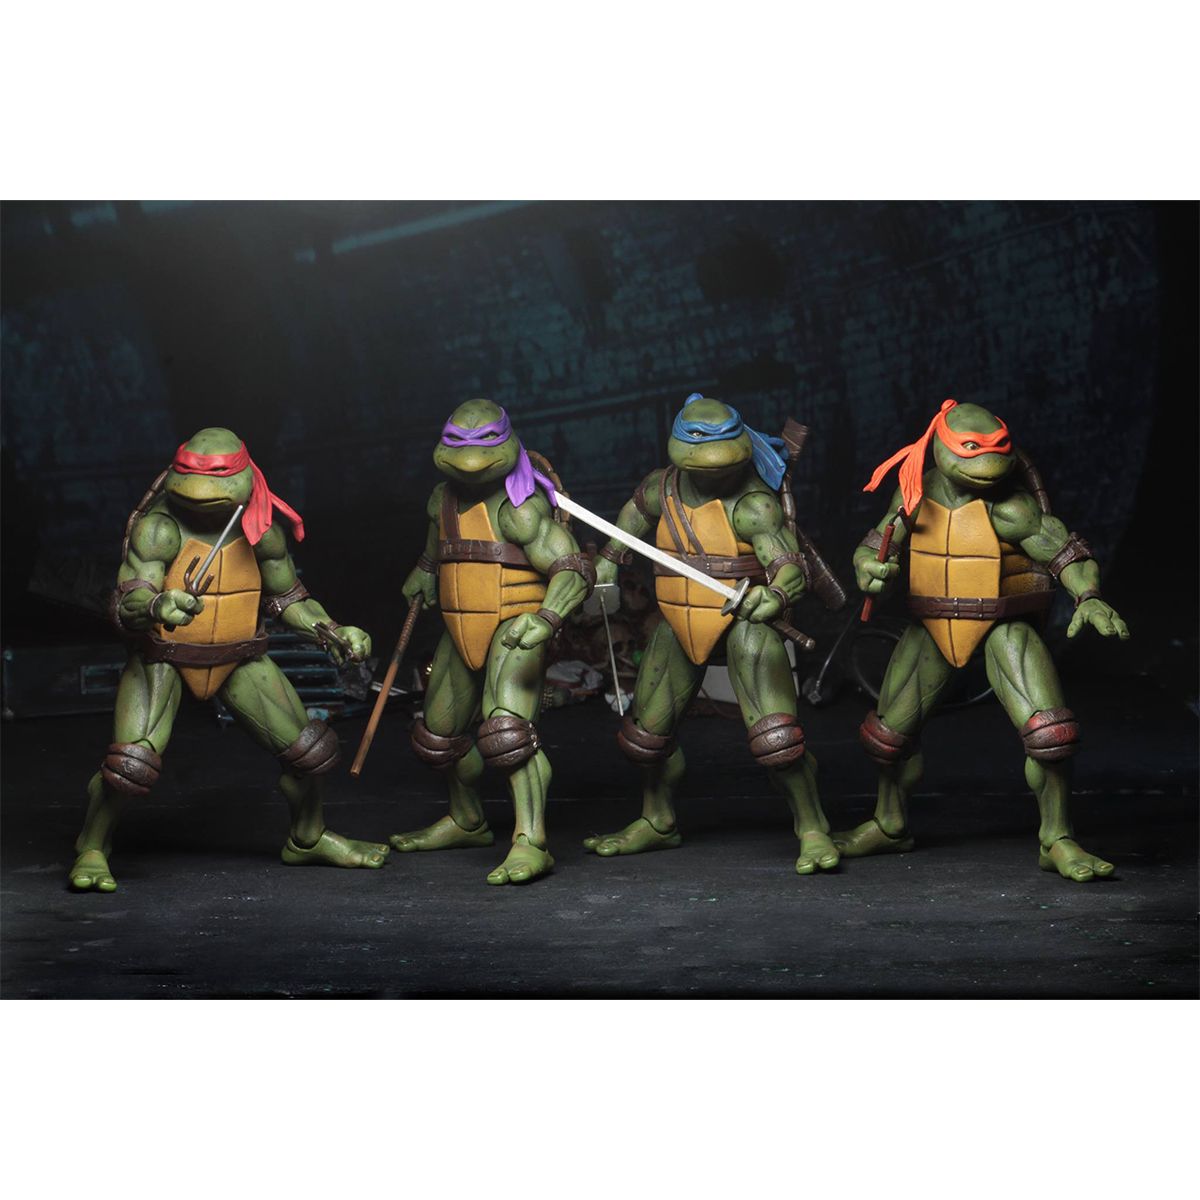 اکشن فیگور نکا مدل لاکپشت های نینجا طرح Turtle Ninja مجموعه 4 عددی -  - 12